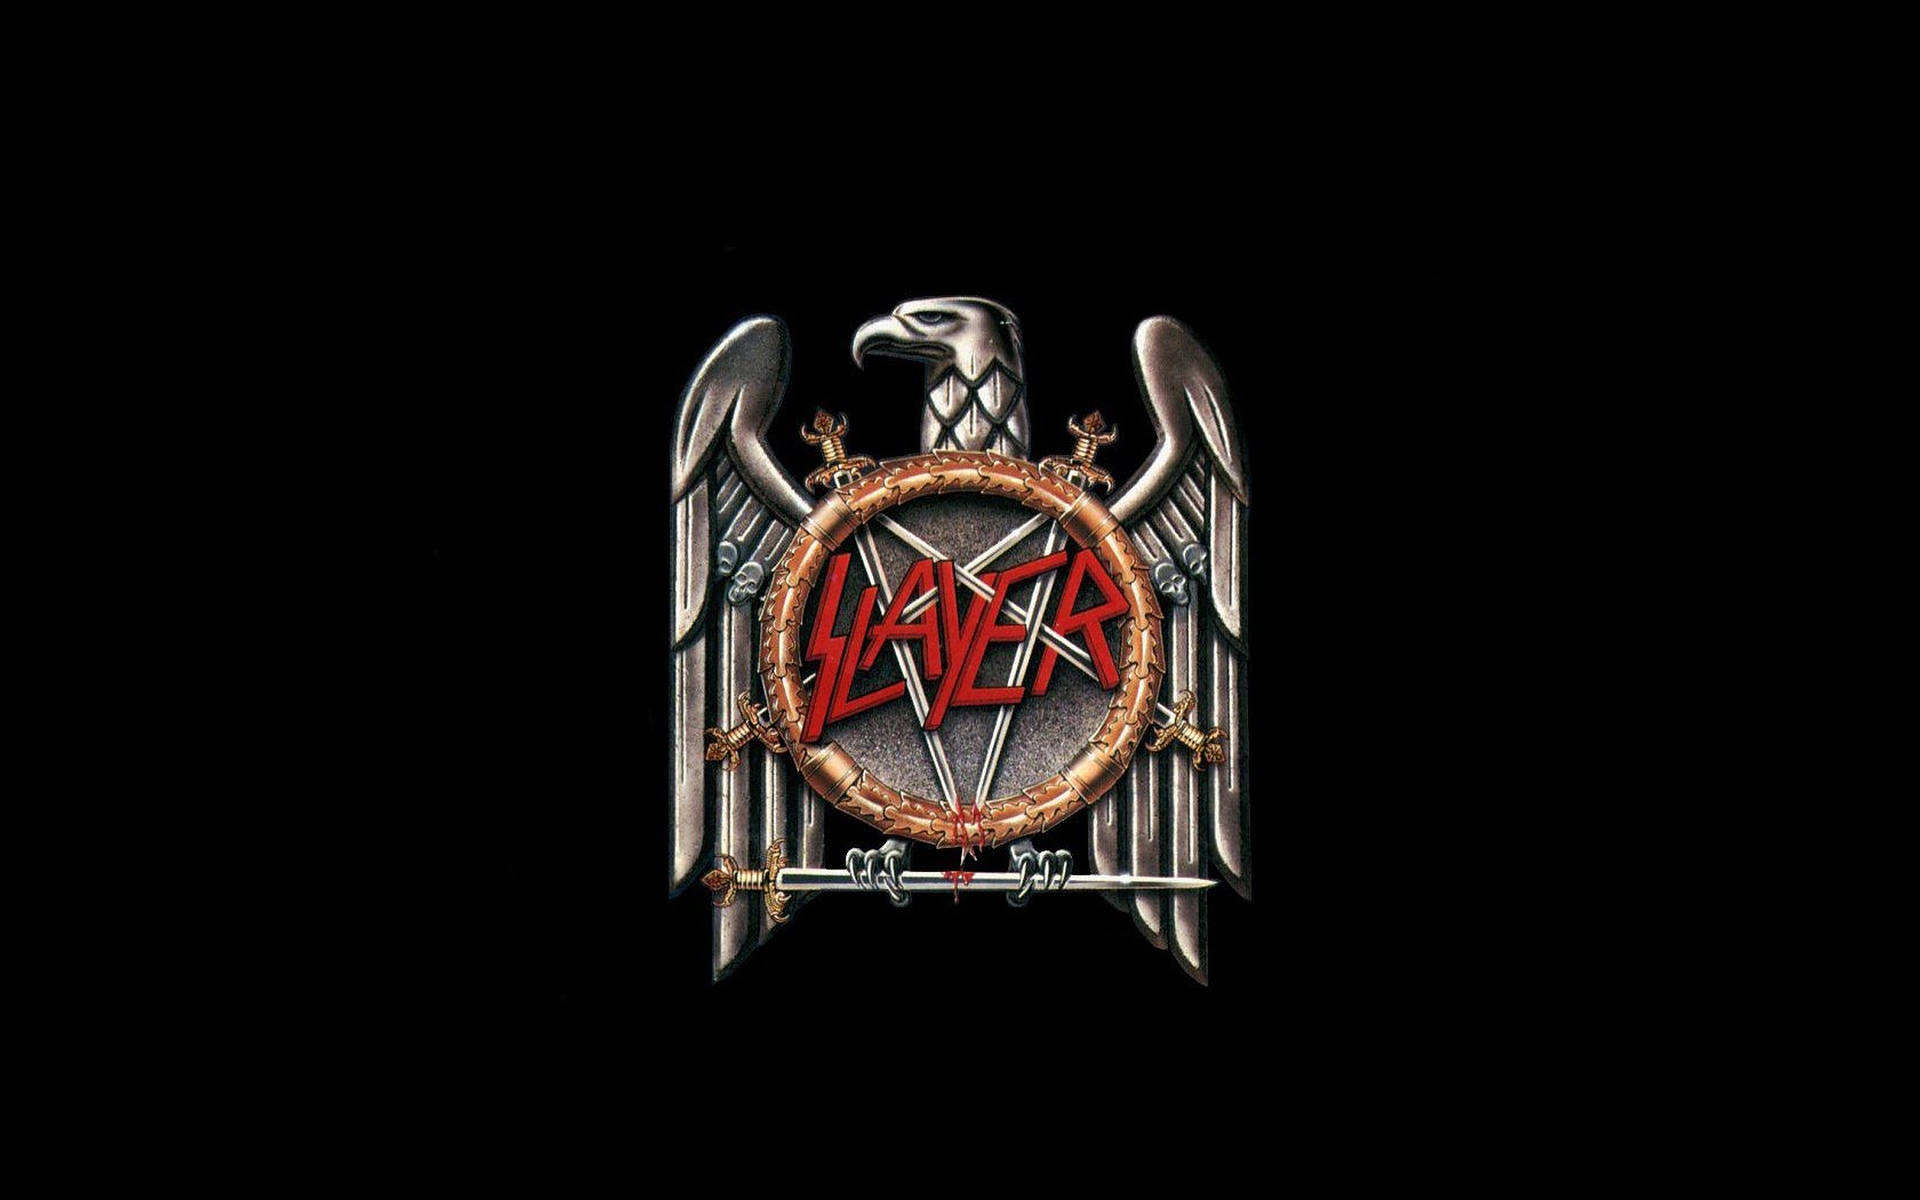 Black Eagle Slayer Band Logo Background